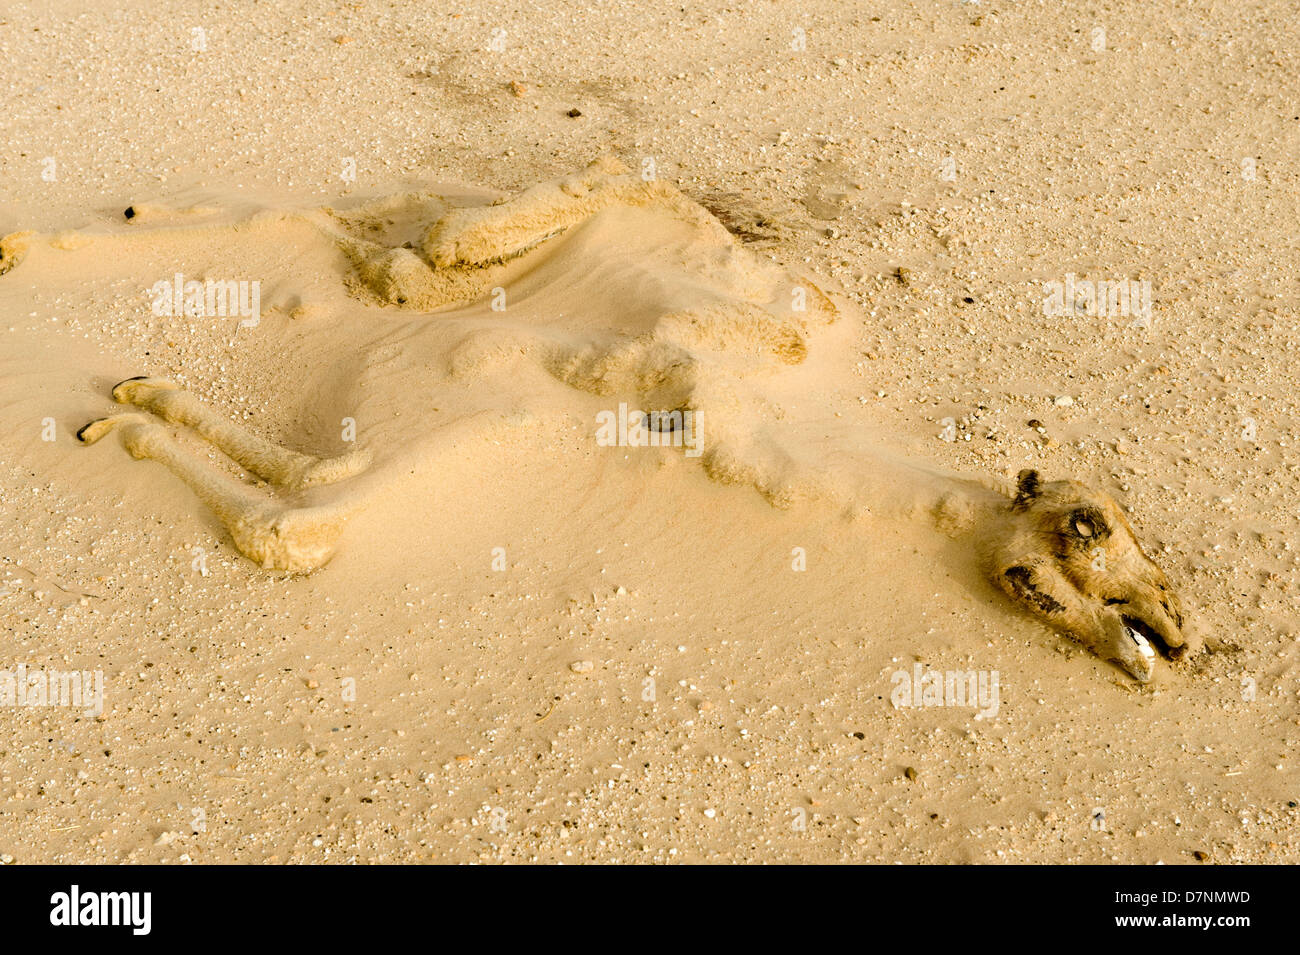 Un tiempo muerto seco de camello despojos de ternera medio enterrado por la arena en el desierto, Abu Dhabi Foto de stock